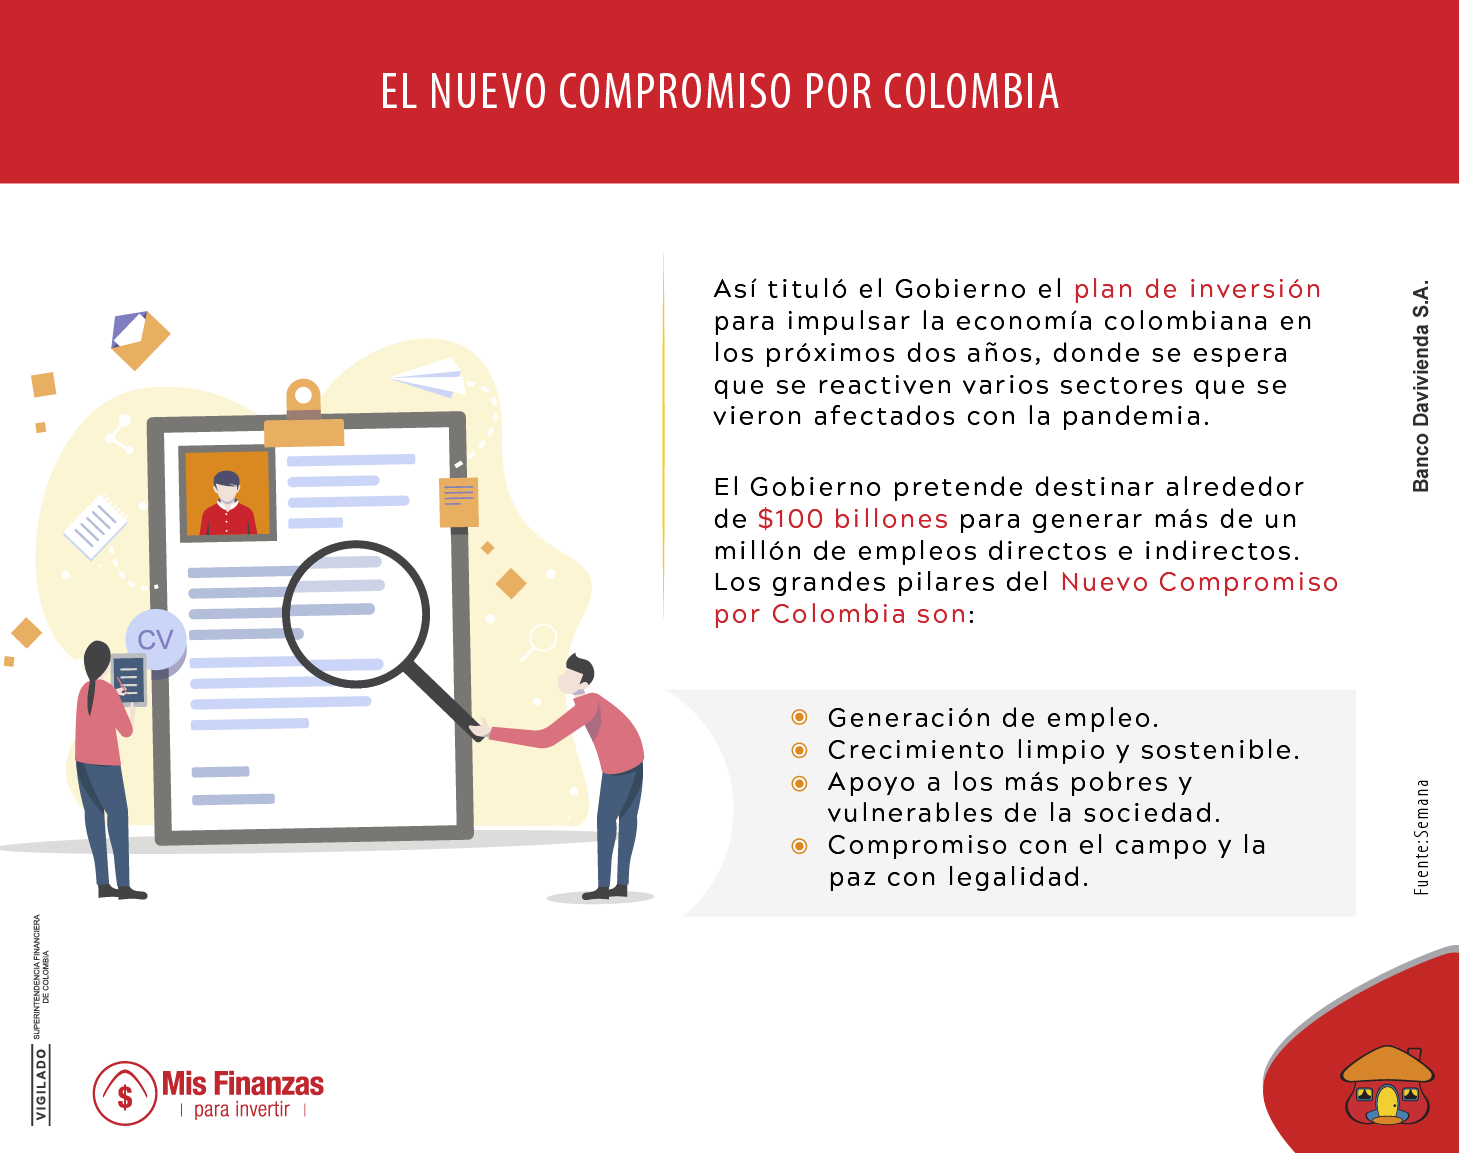 El Nuevo Compromiso por el Futuro de Colombia, en aras de la recuperación económica